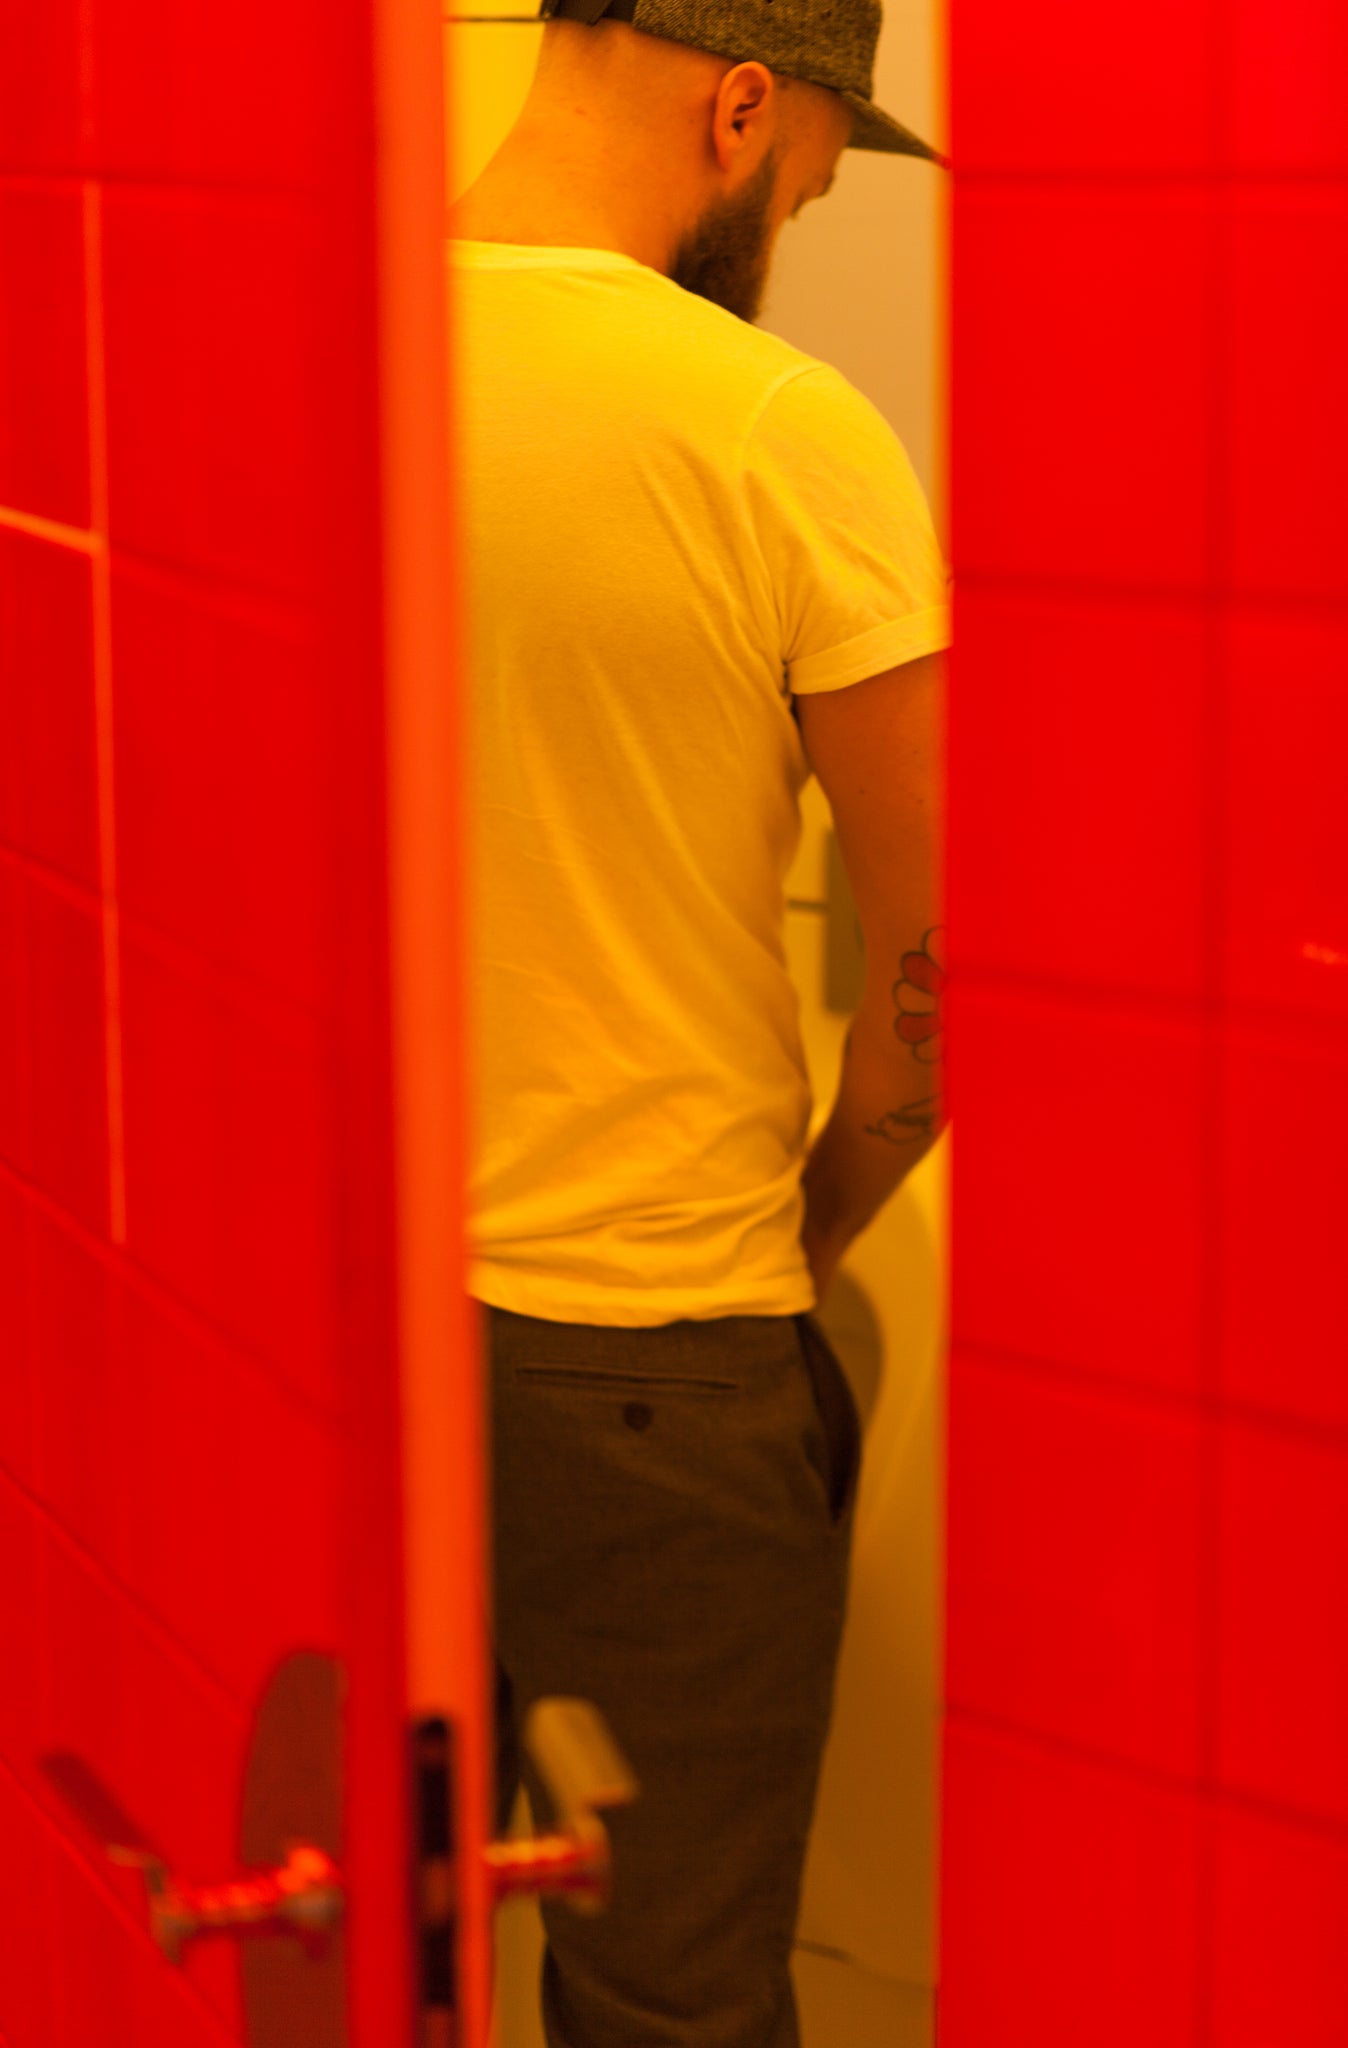 print - stalking him at the urinals